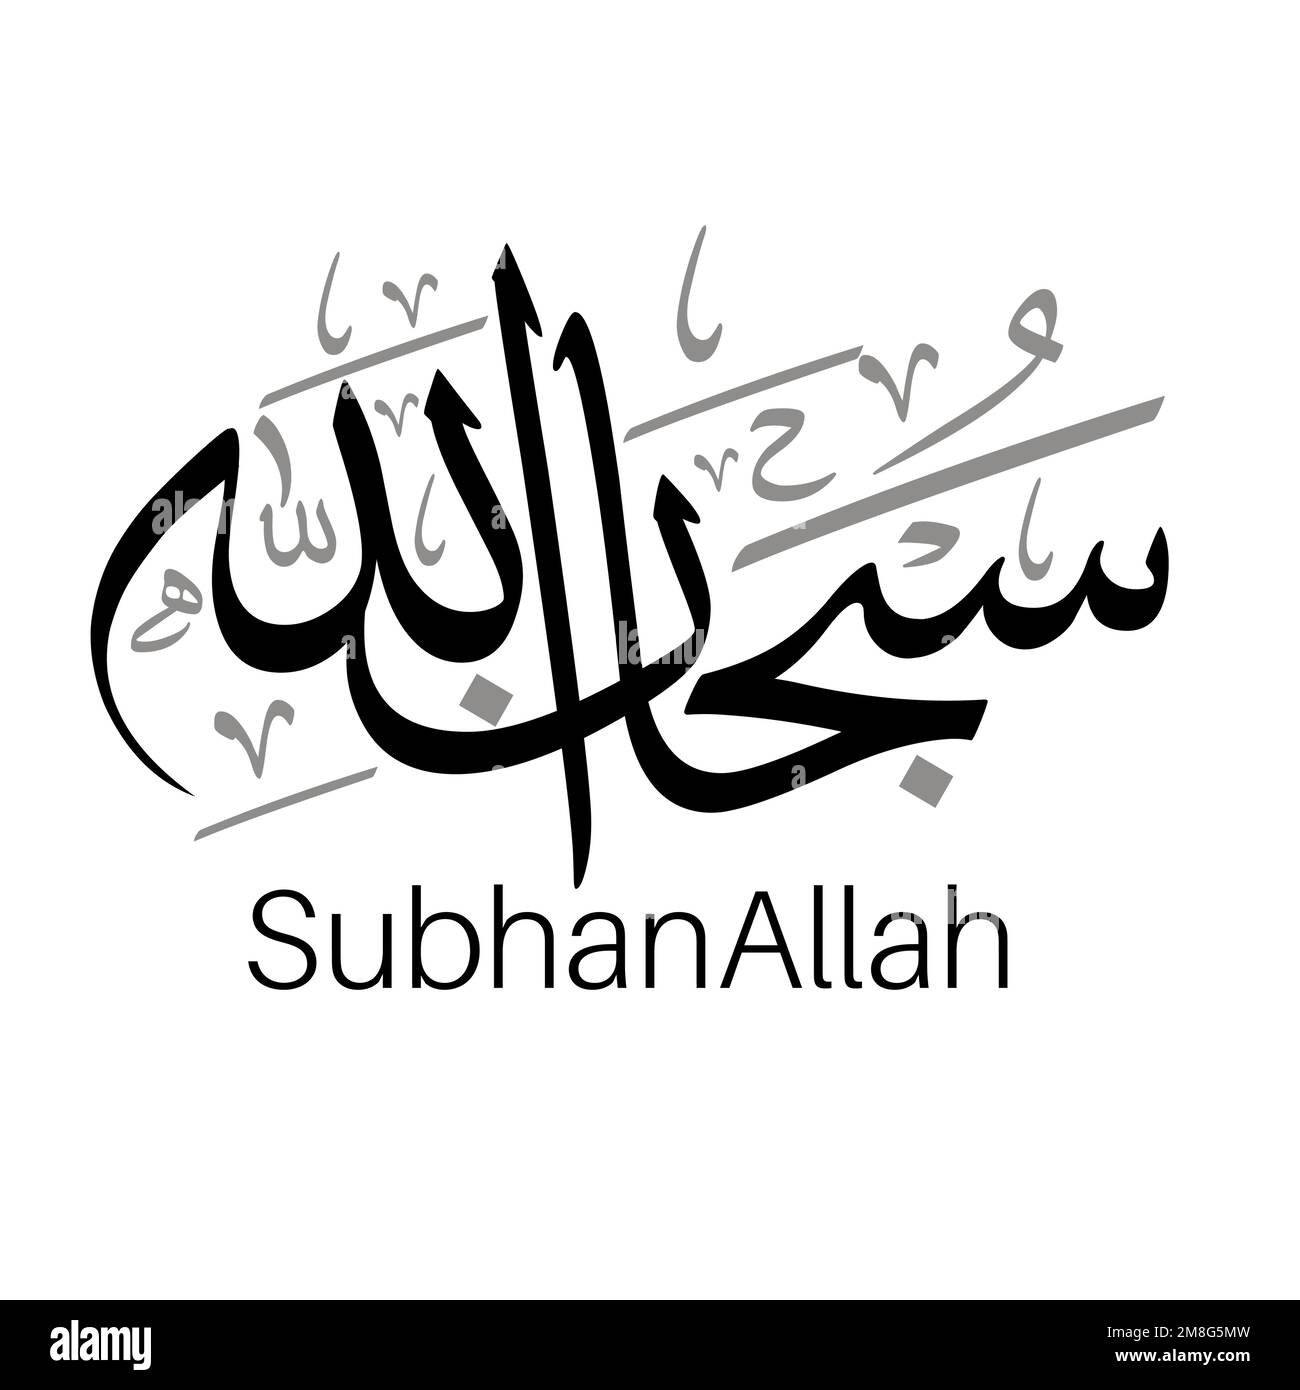 Subhan Allah Alhumdolillah Allahu Akbar Diseño De Vector De Caligrafía